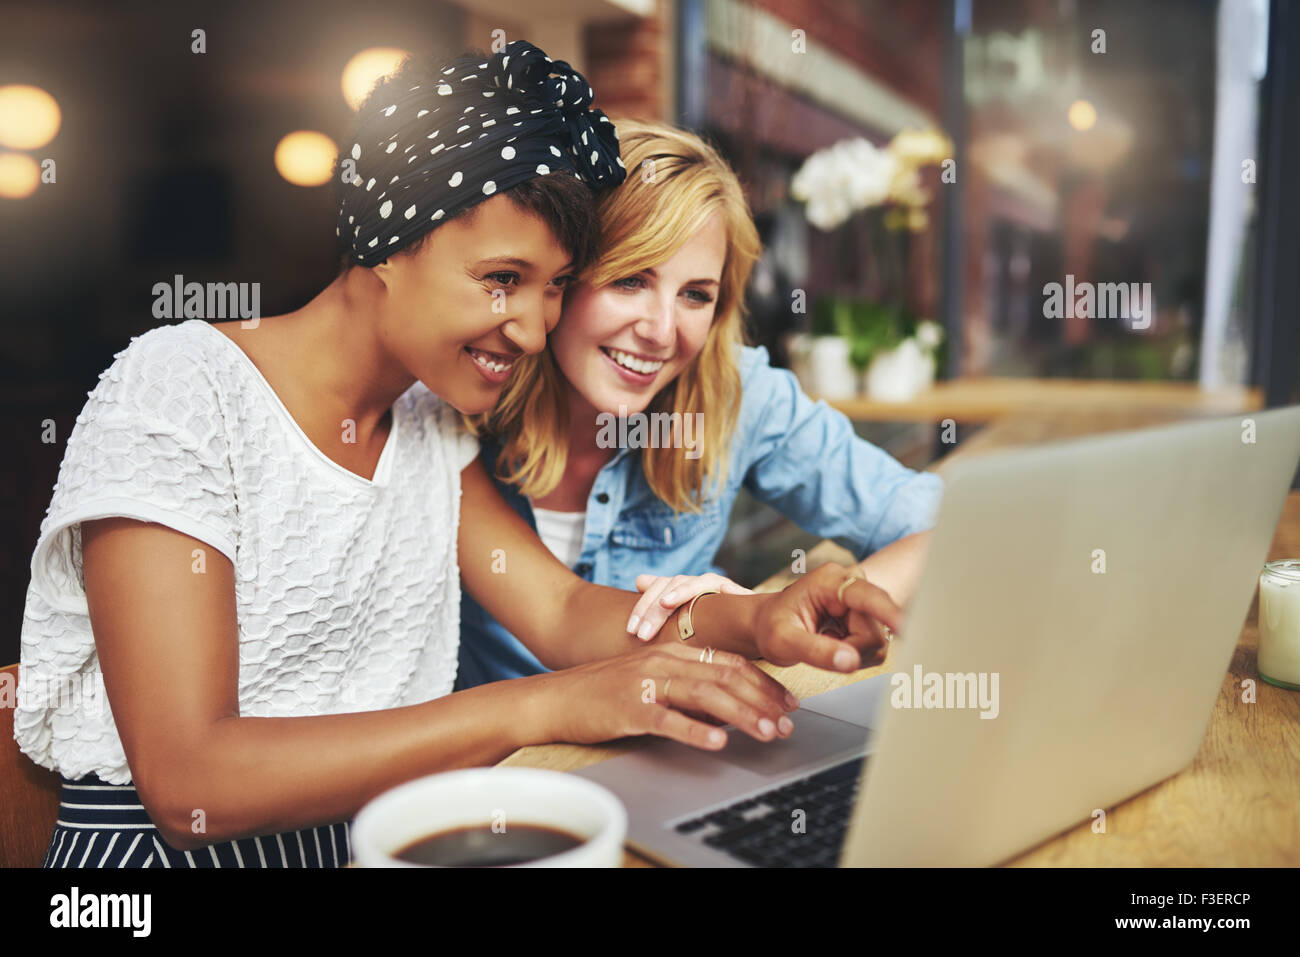 Zwei Rassen junge Freundinnen Surfen im Internet zusammen auf einem Laptop, wie sie in einer Cafeteria, einer Tasse Kaff sitzen Stockfoto